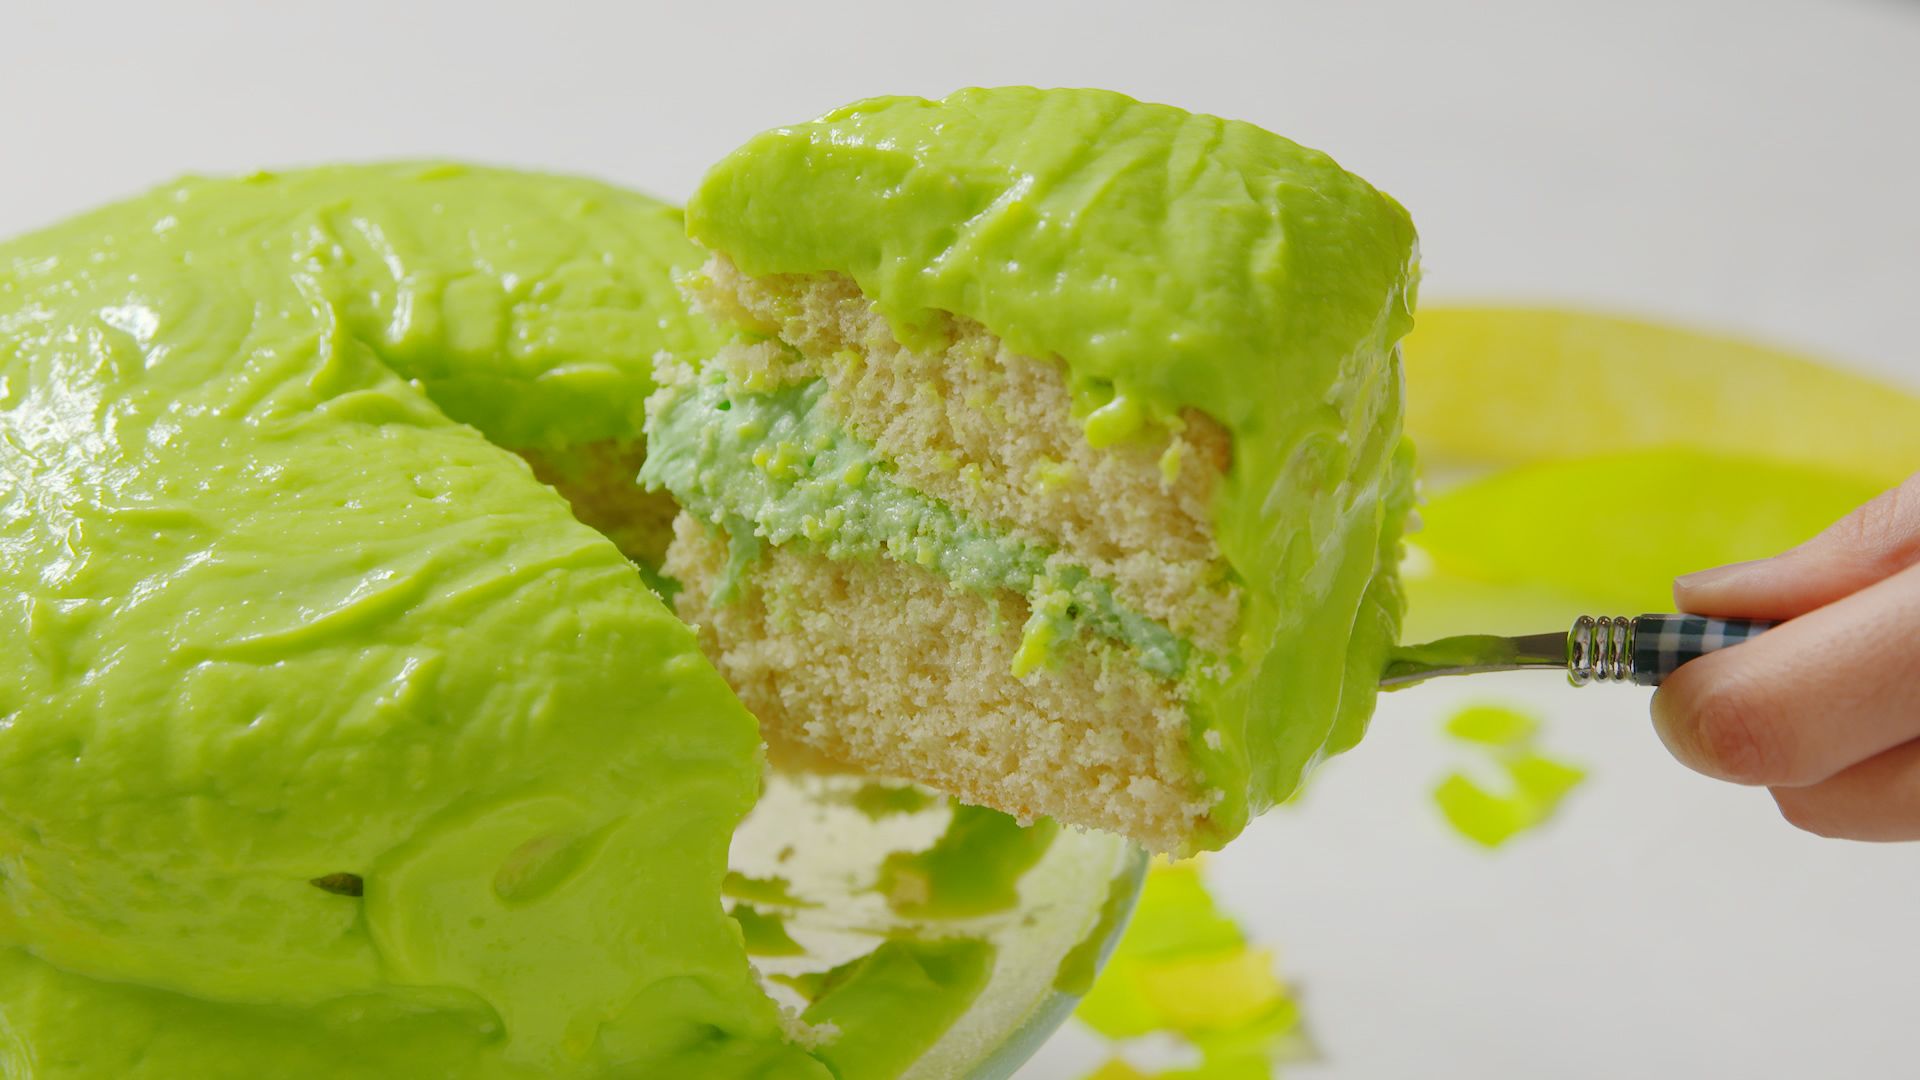 Nickelodeon Slime Food Slime Piece O'Cake